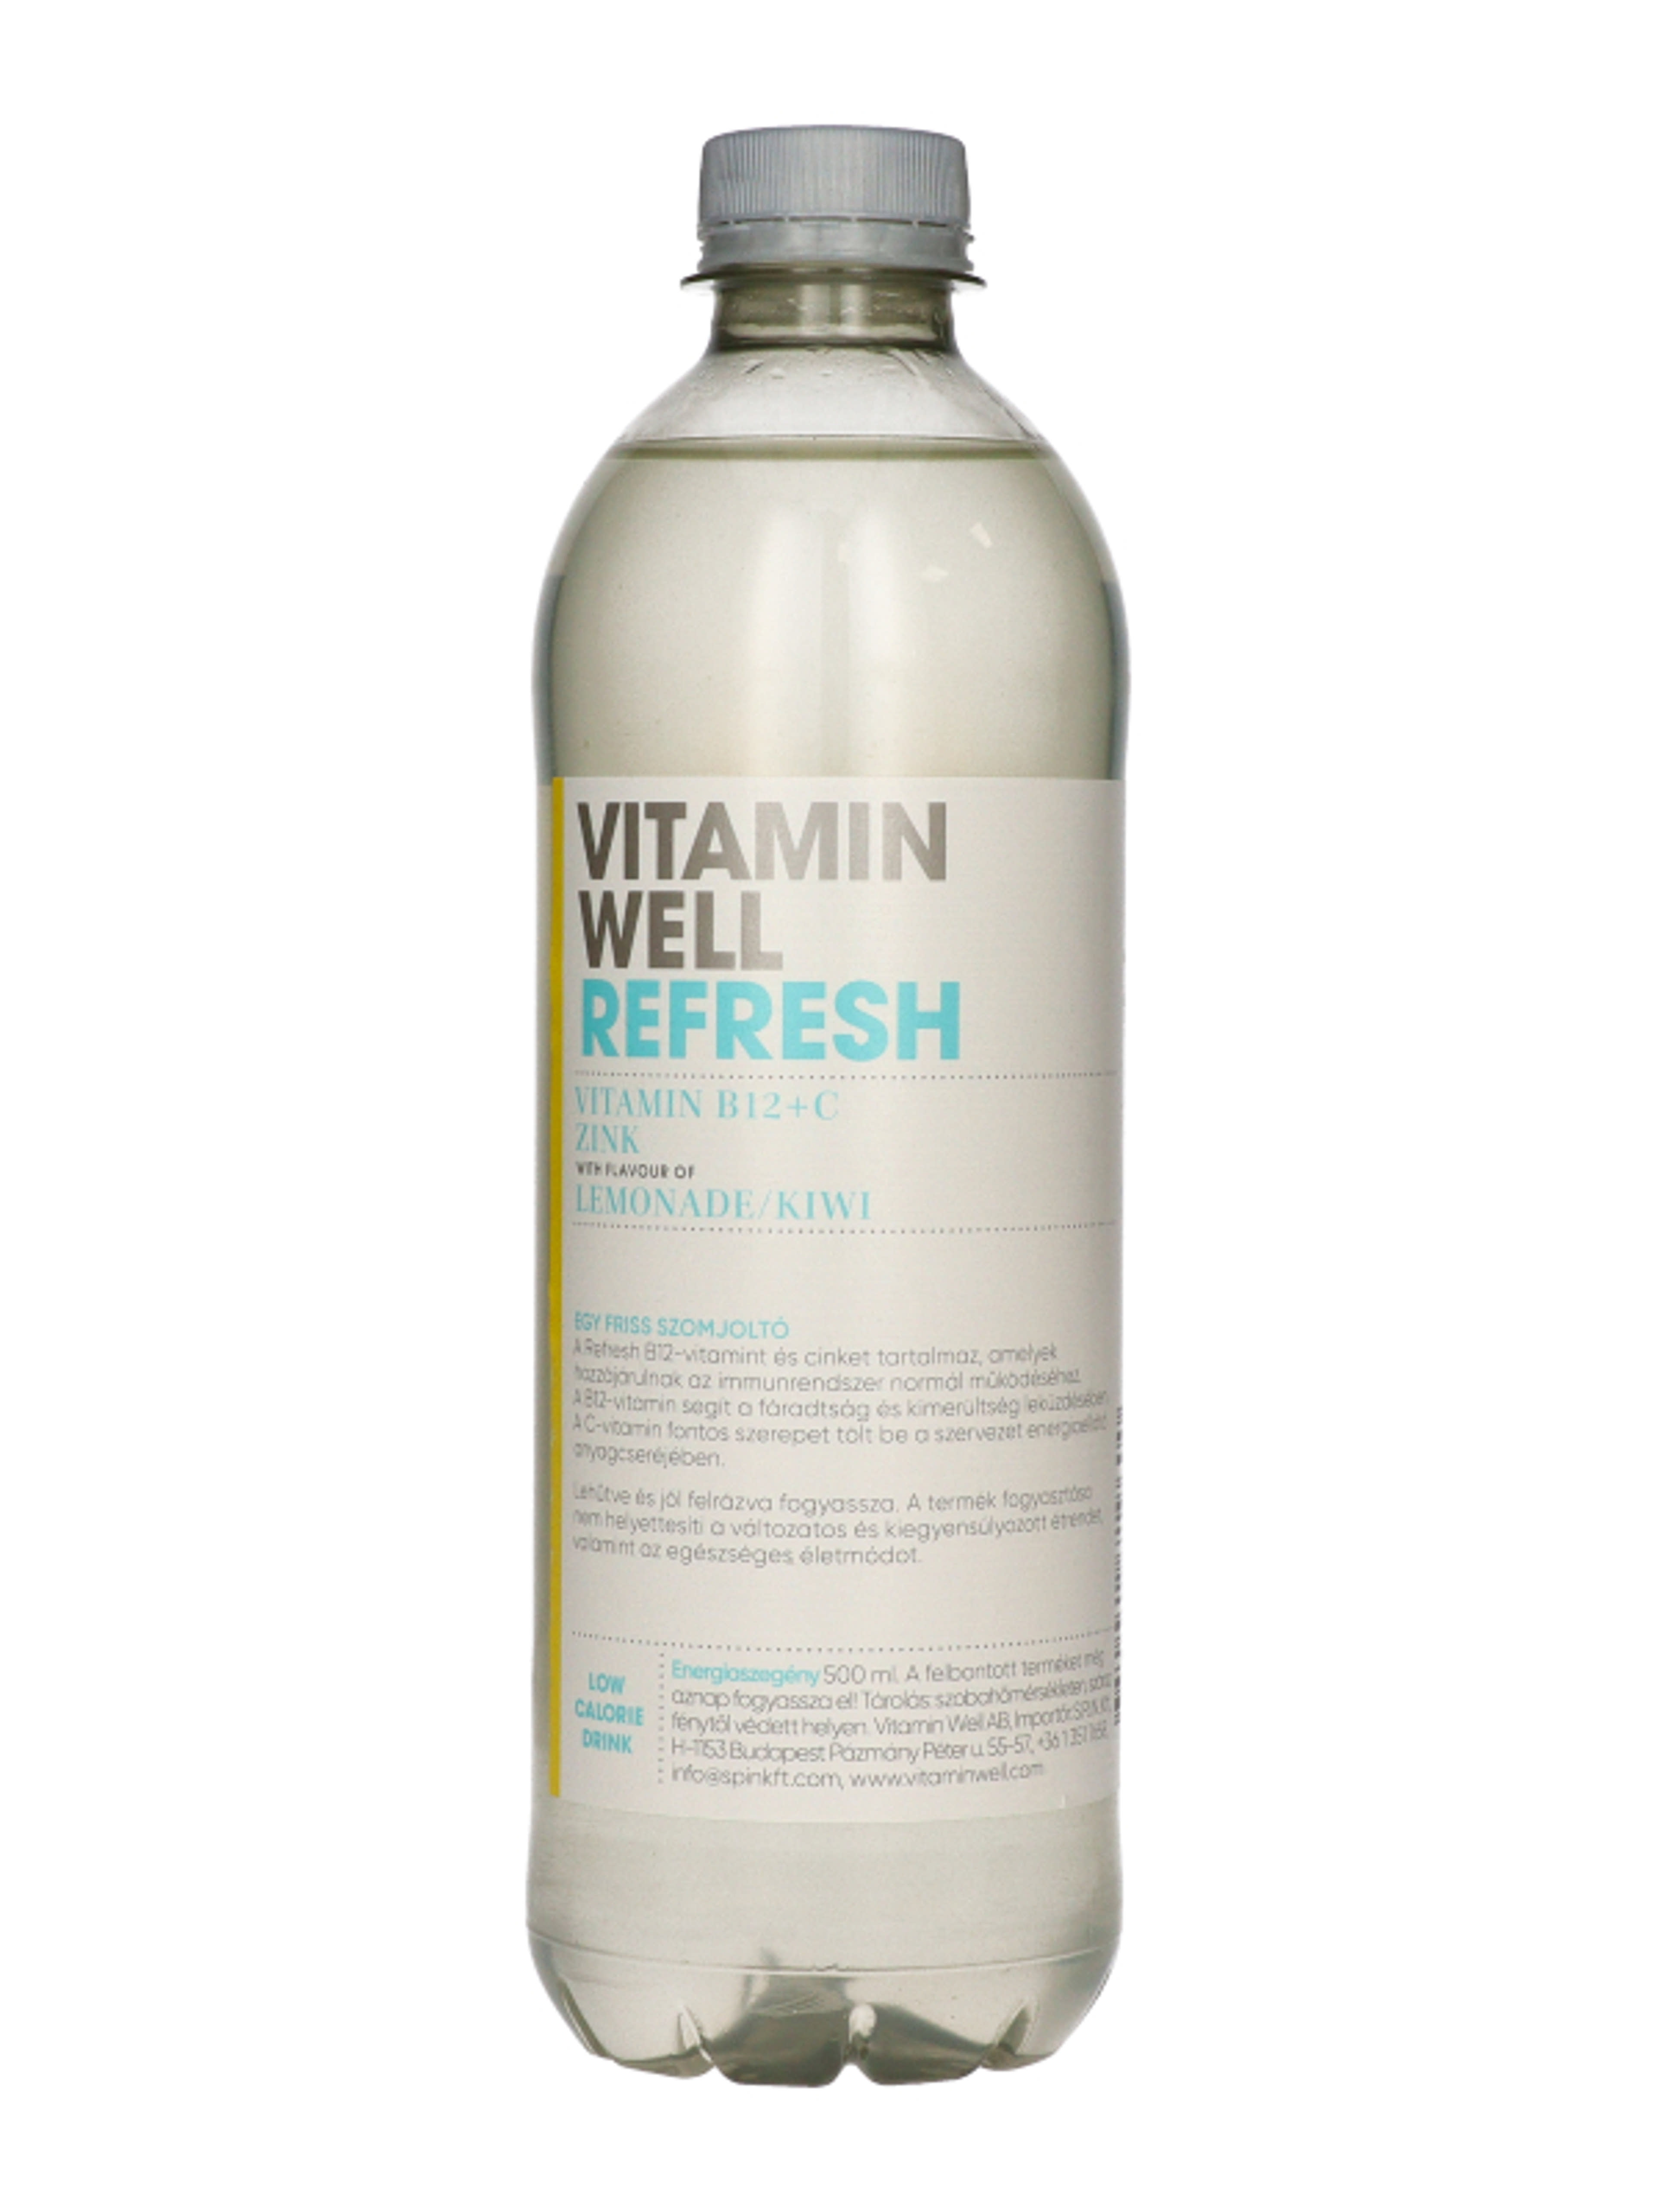 Vitamin Well Refresh limonade-kiwi ízű szénsavmentes energiaszegény üditőital - 500 ml